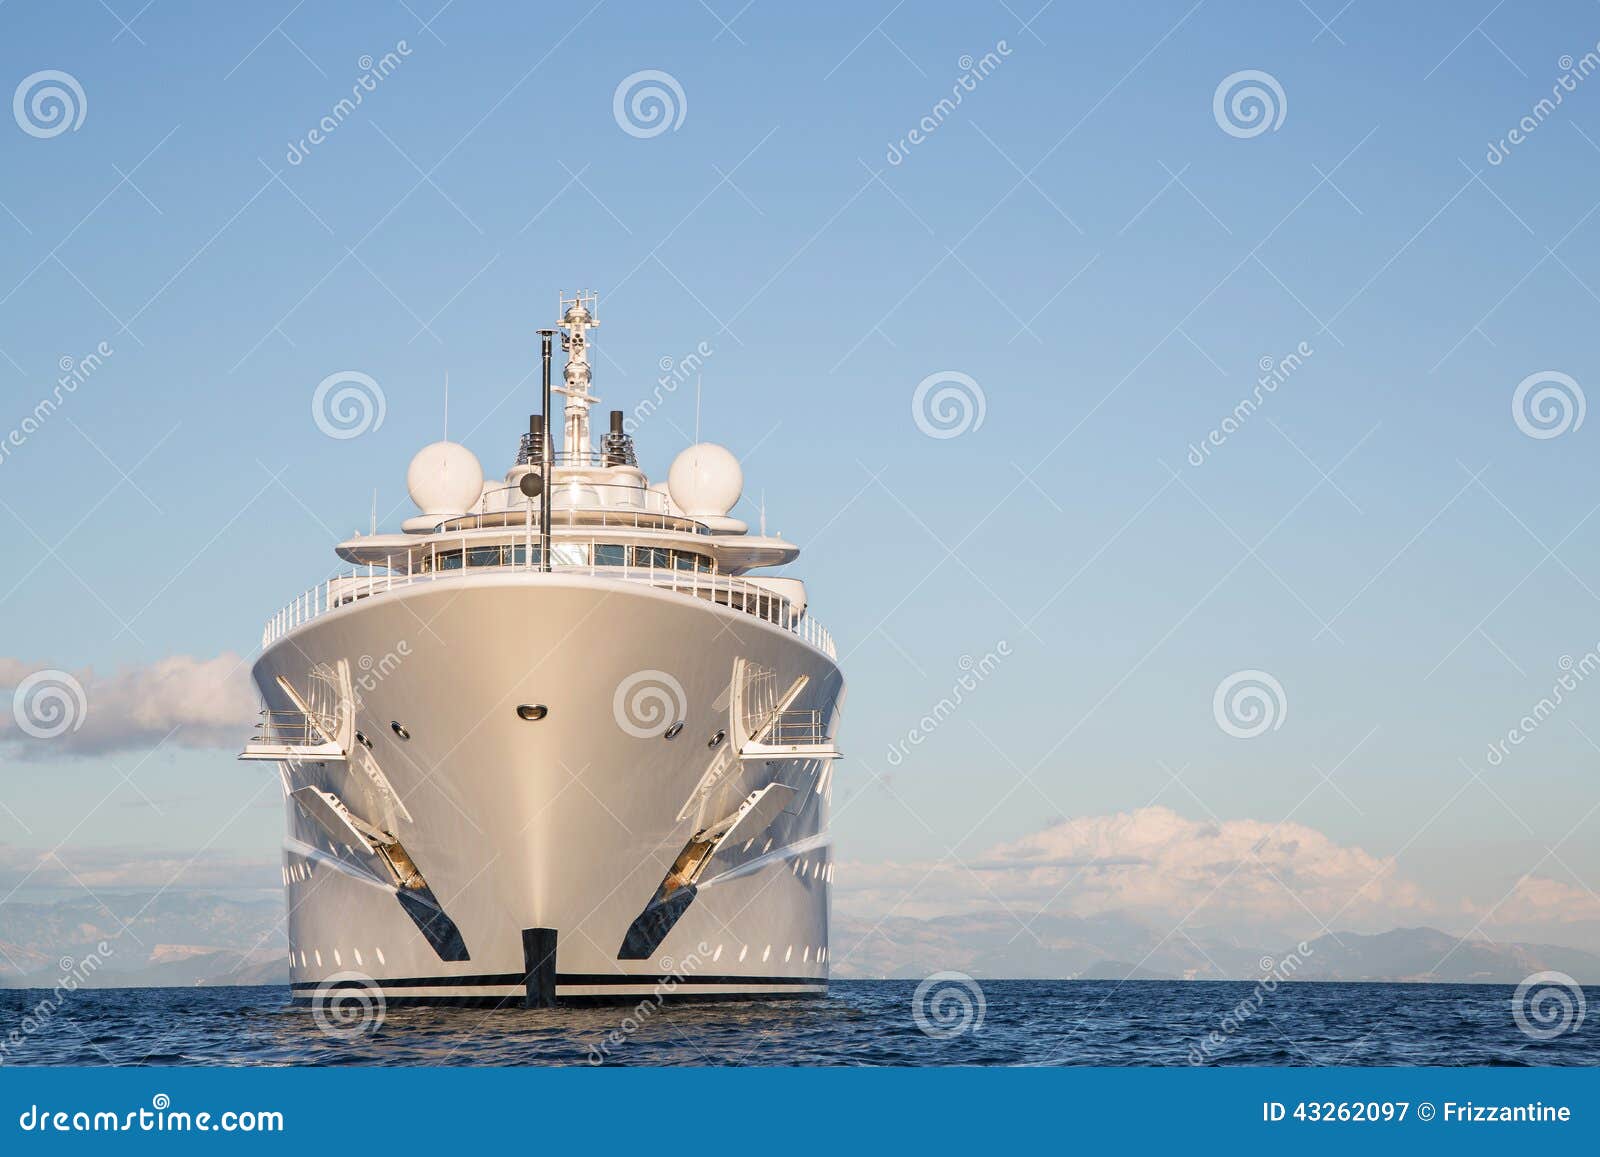 gigantic big and large luxury mega or super motor yacht on the o